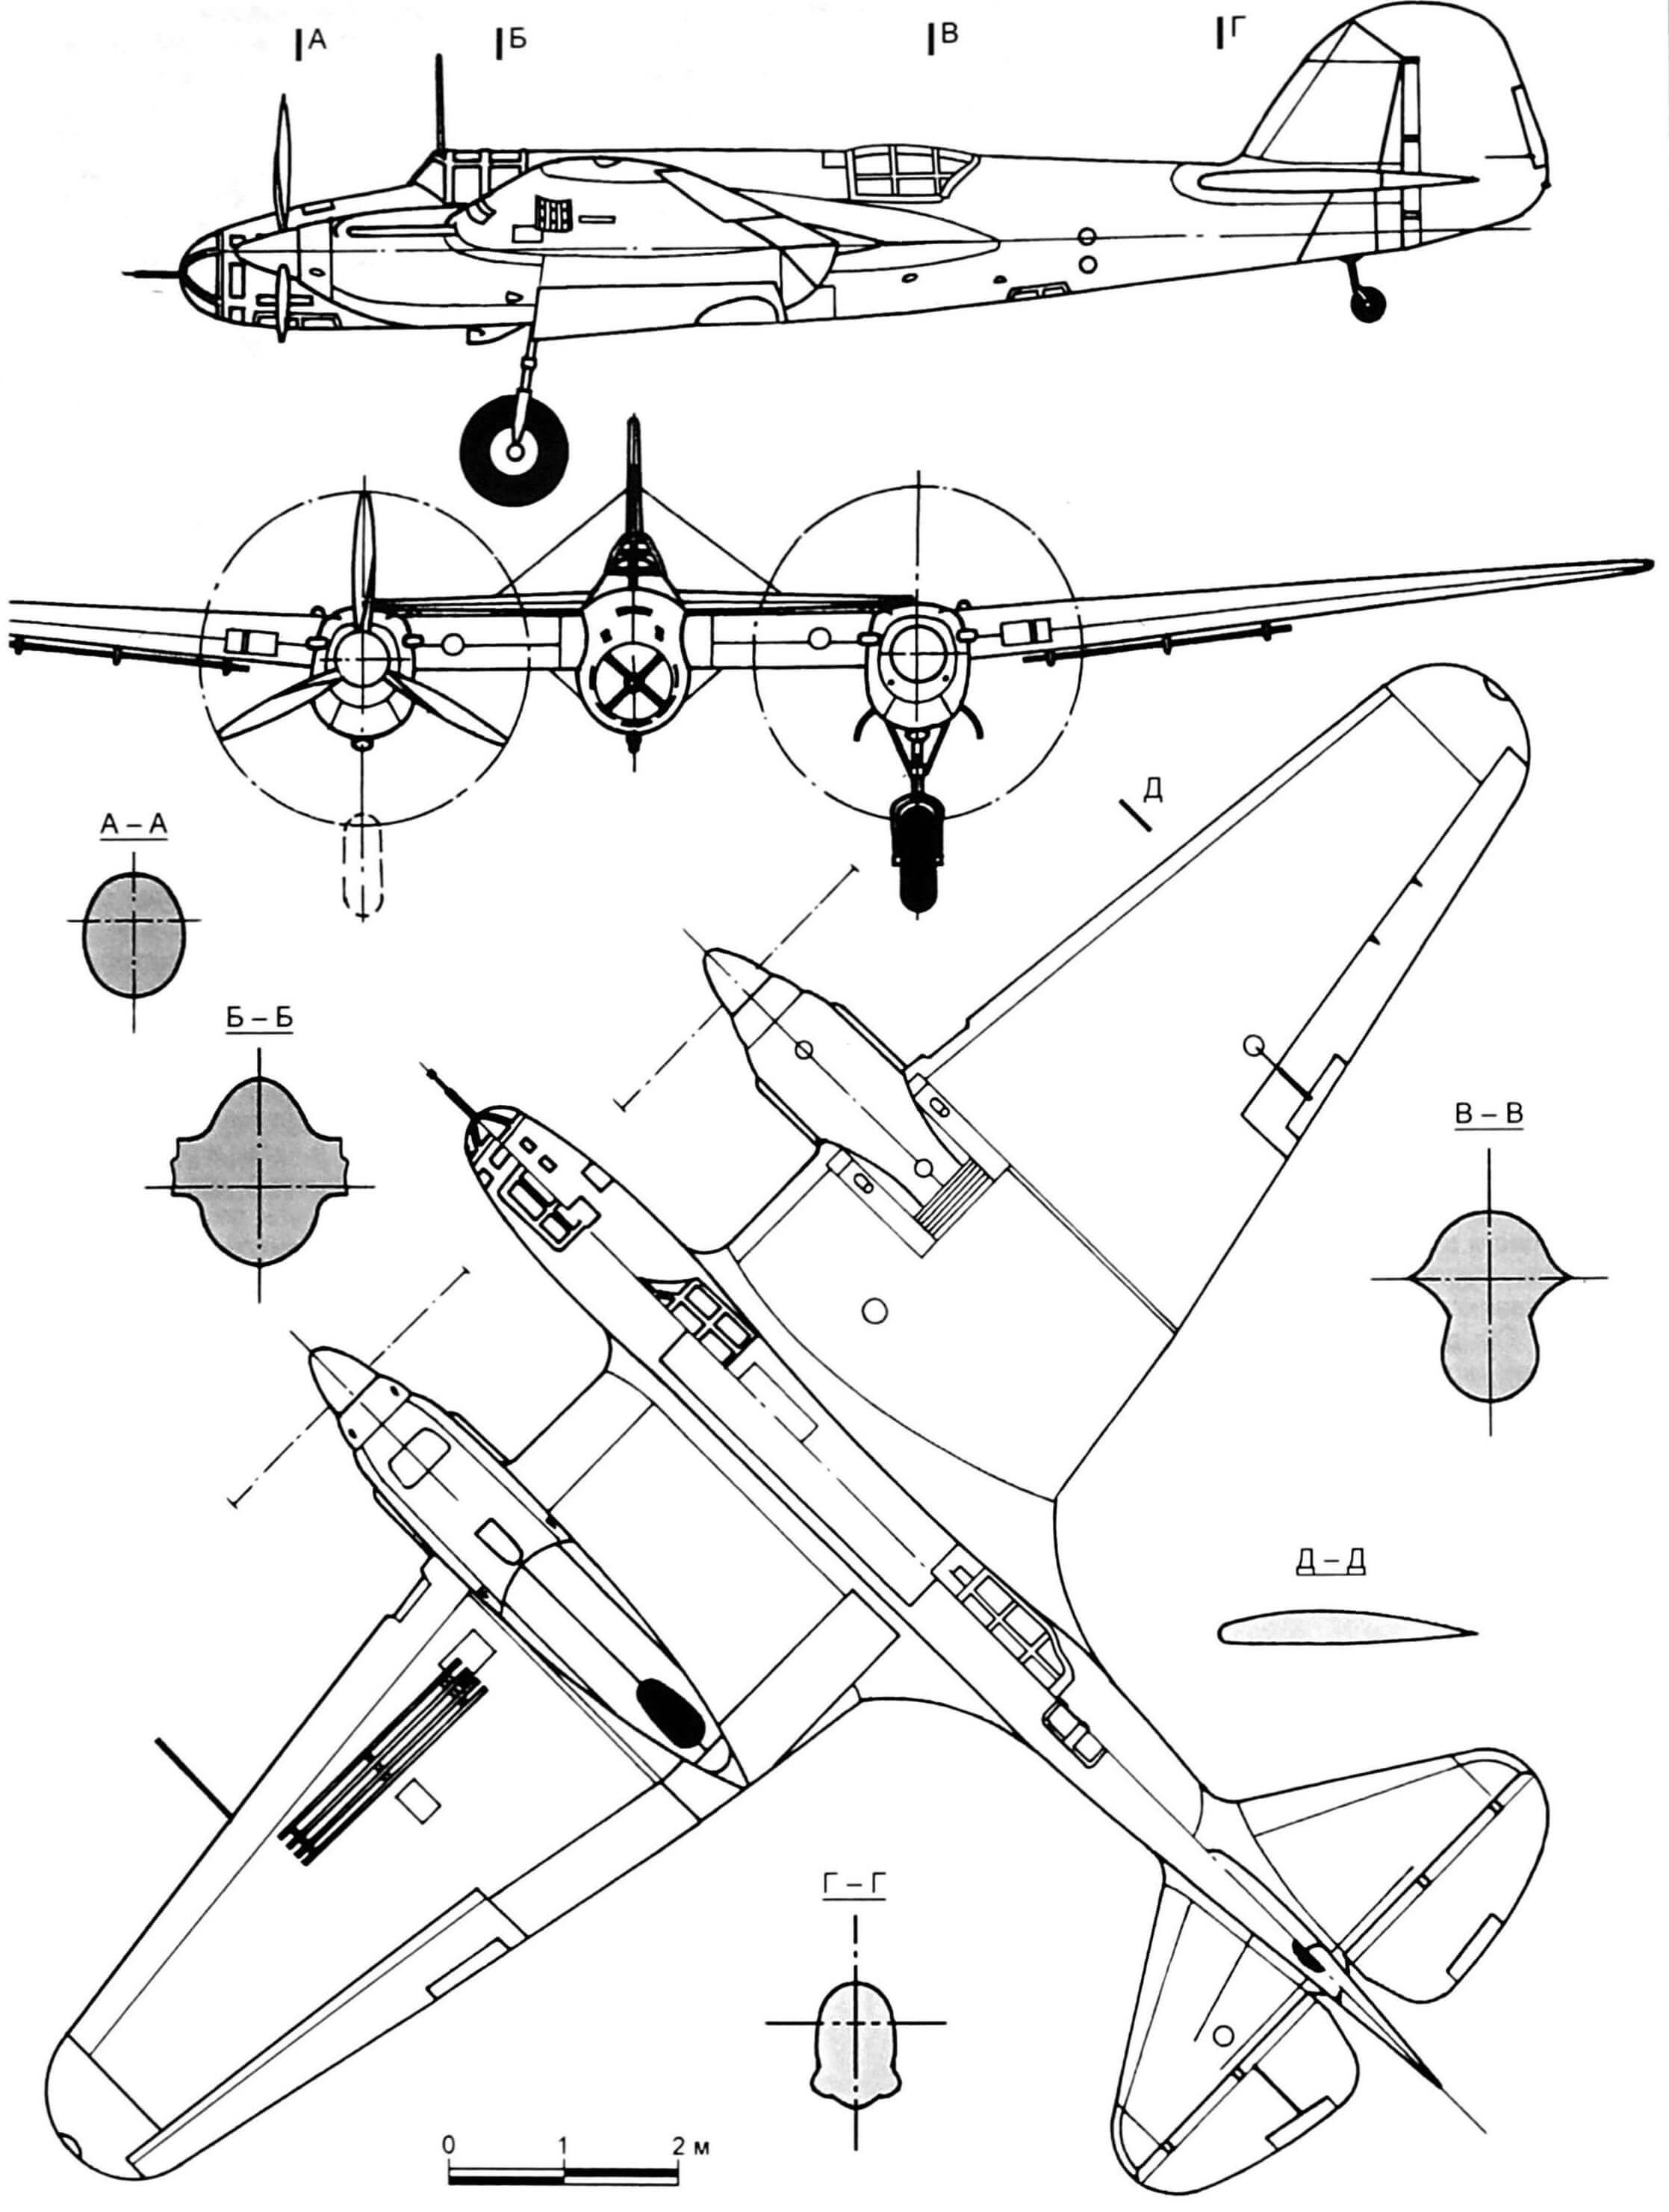 Пикирующий бомбардировщик Ар-2